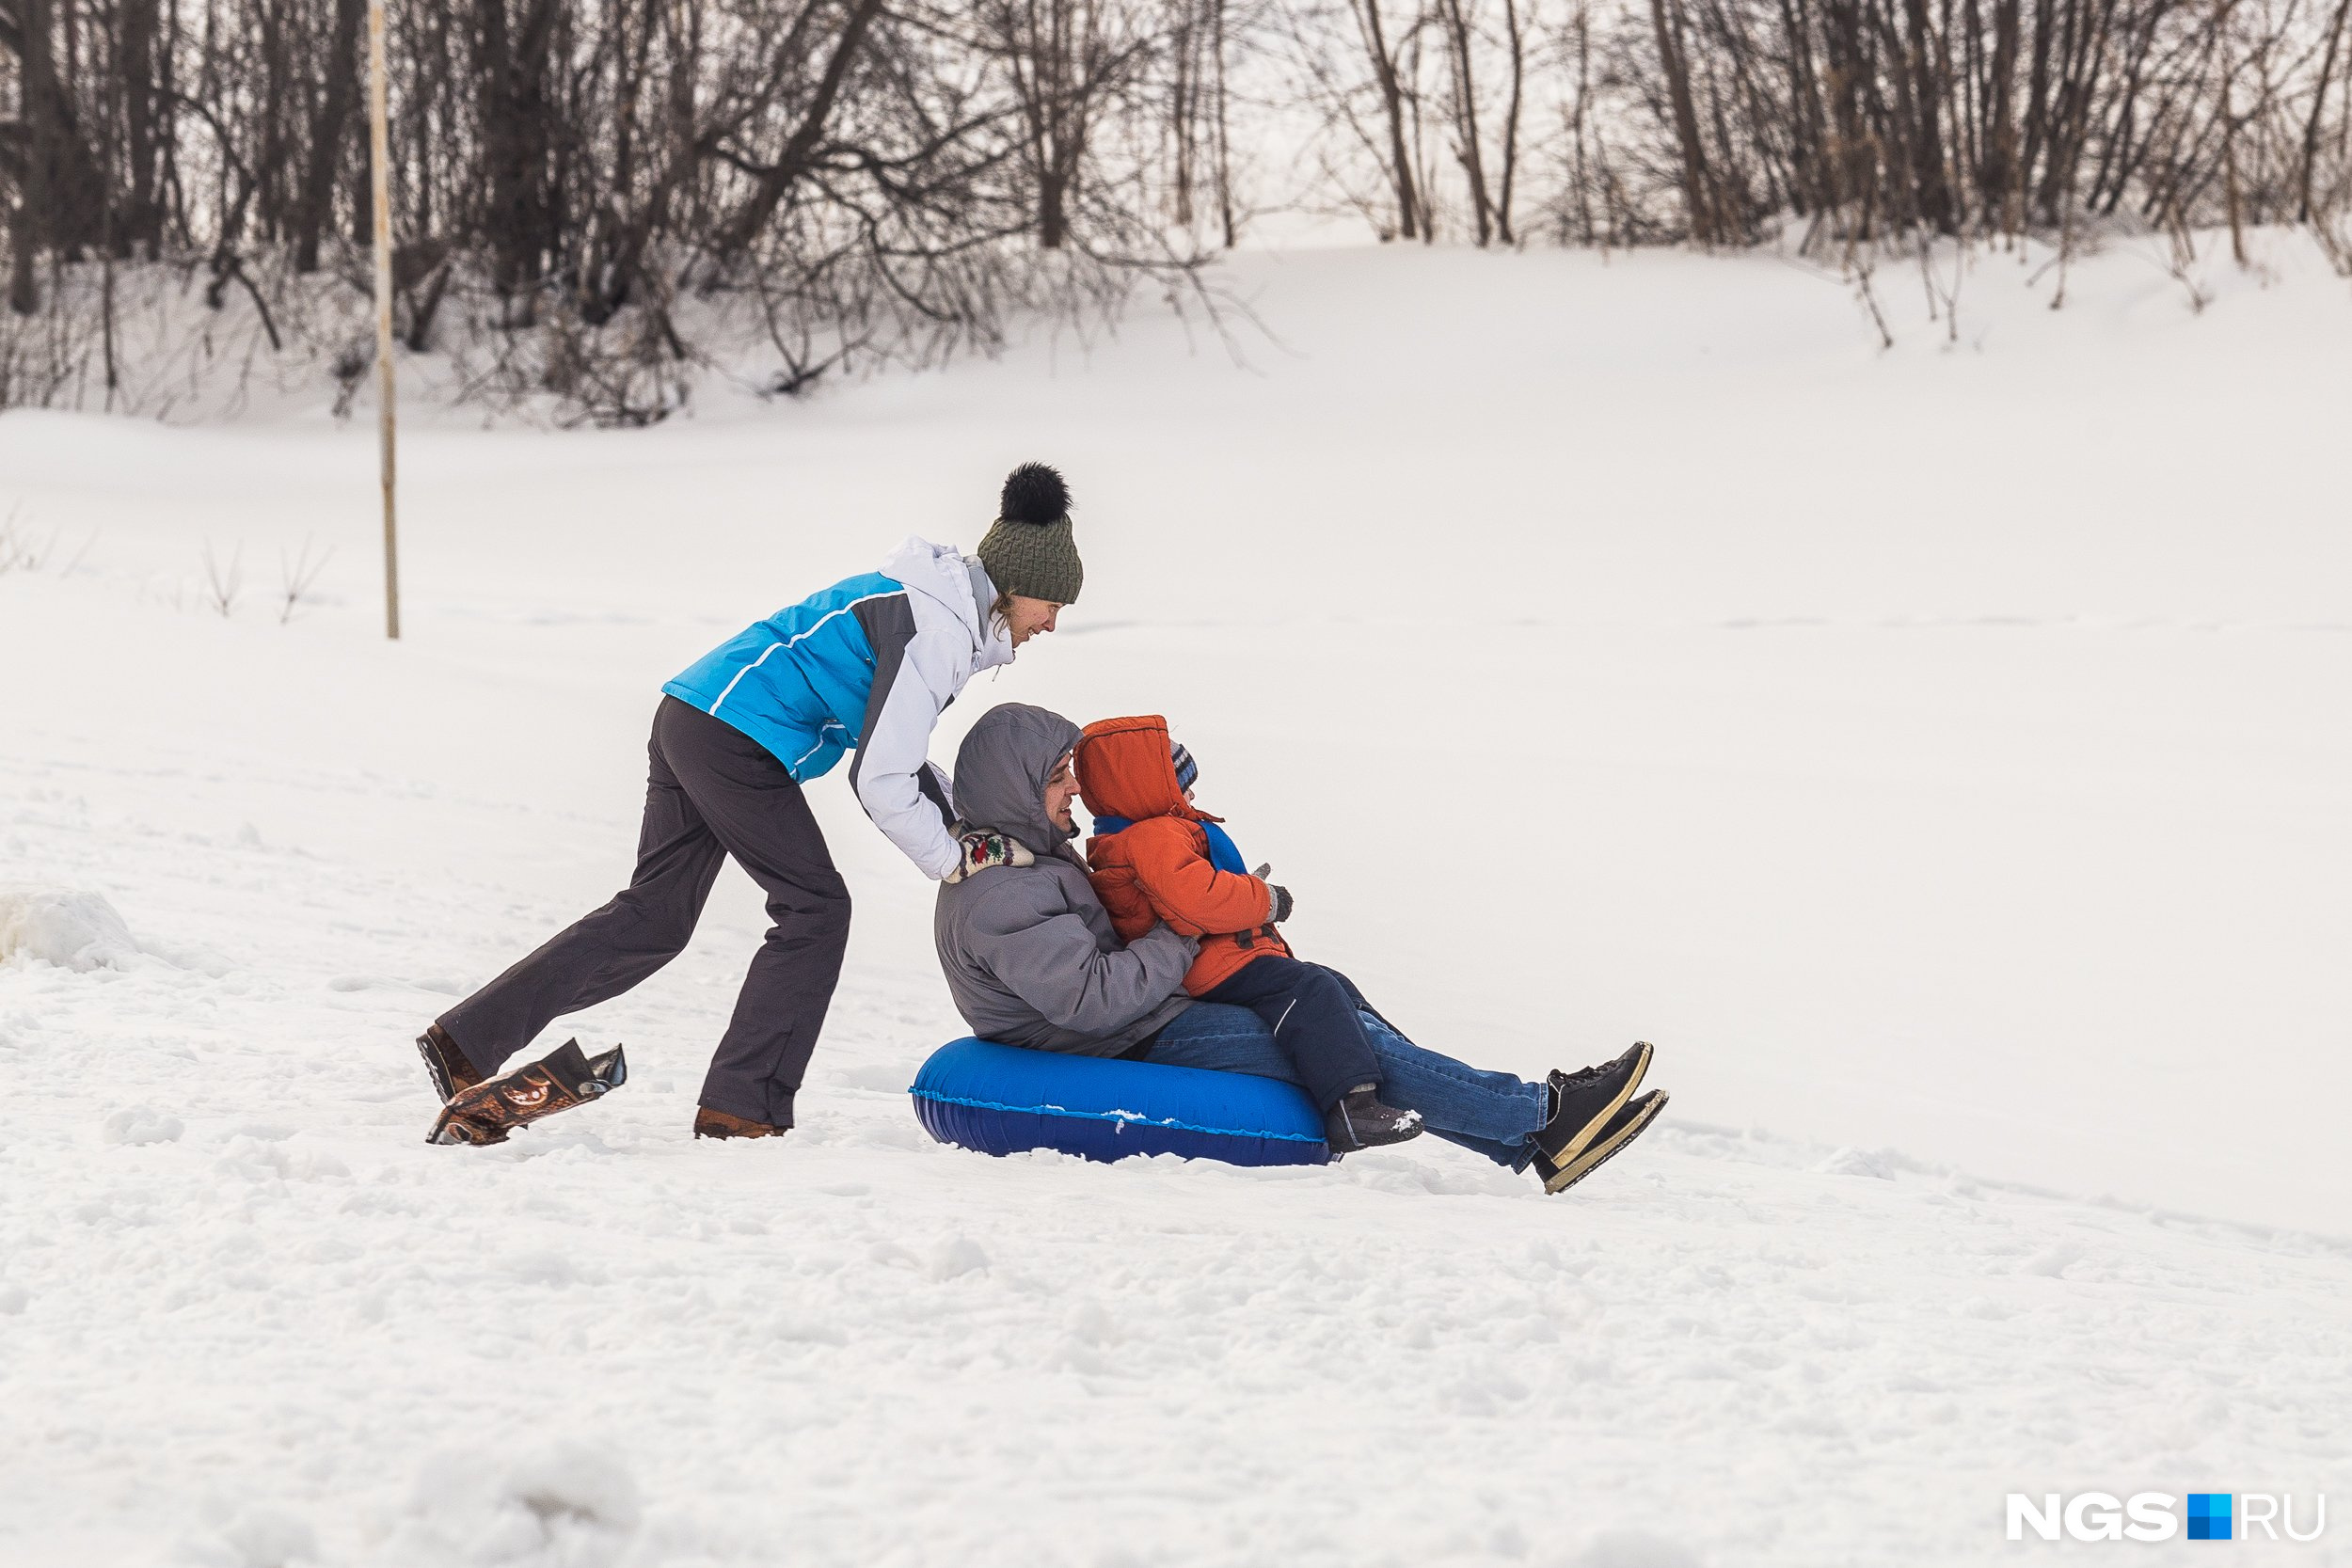 Любовь — это... кататься на «ватрушке» всей семьёй в первый день весны по новосибирскому снегу!